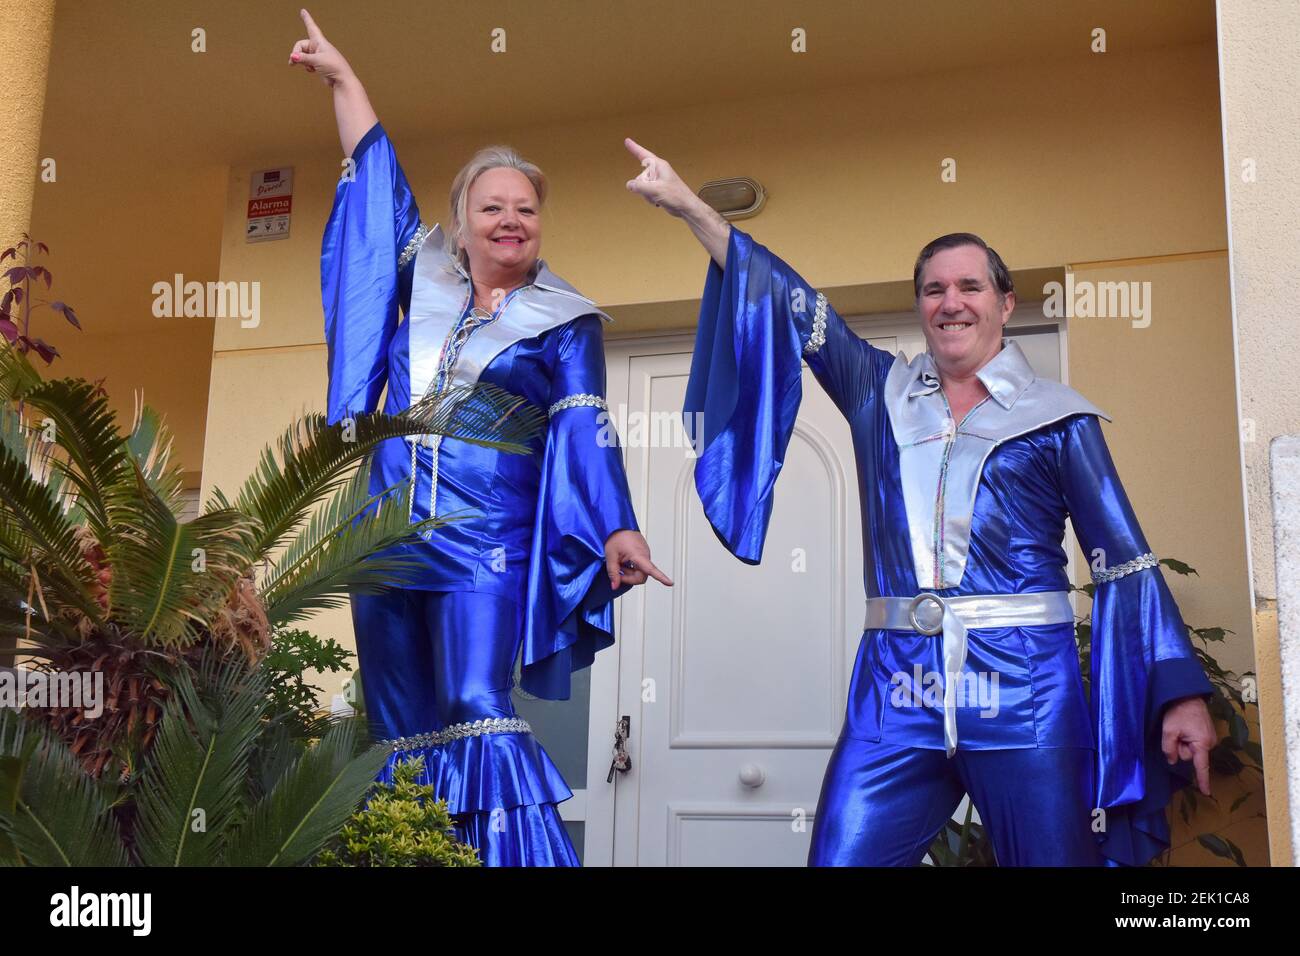 Una pareja disfrazada de cantantes del grupo ABBA durante la actuación de  música de los años 80 para entretener a sus vecinos durante el  confinamiento. Los residentes del barrio Mas d'en Gual